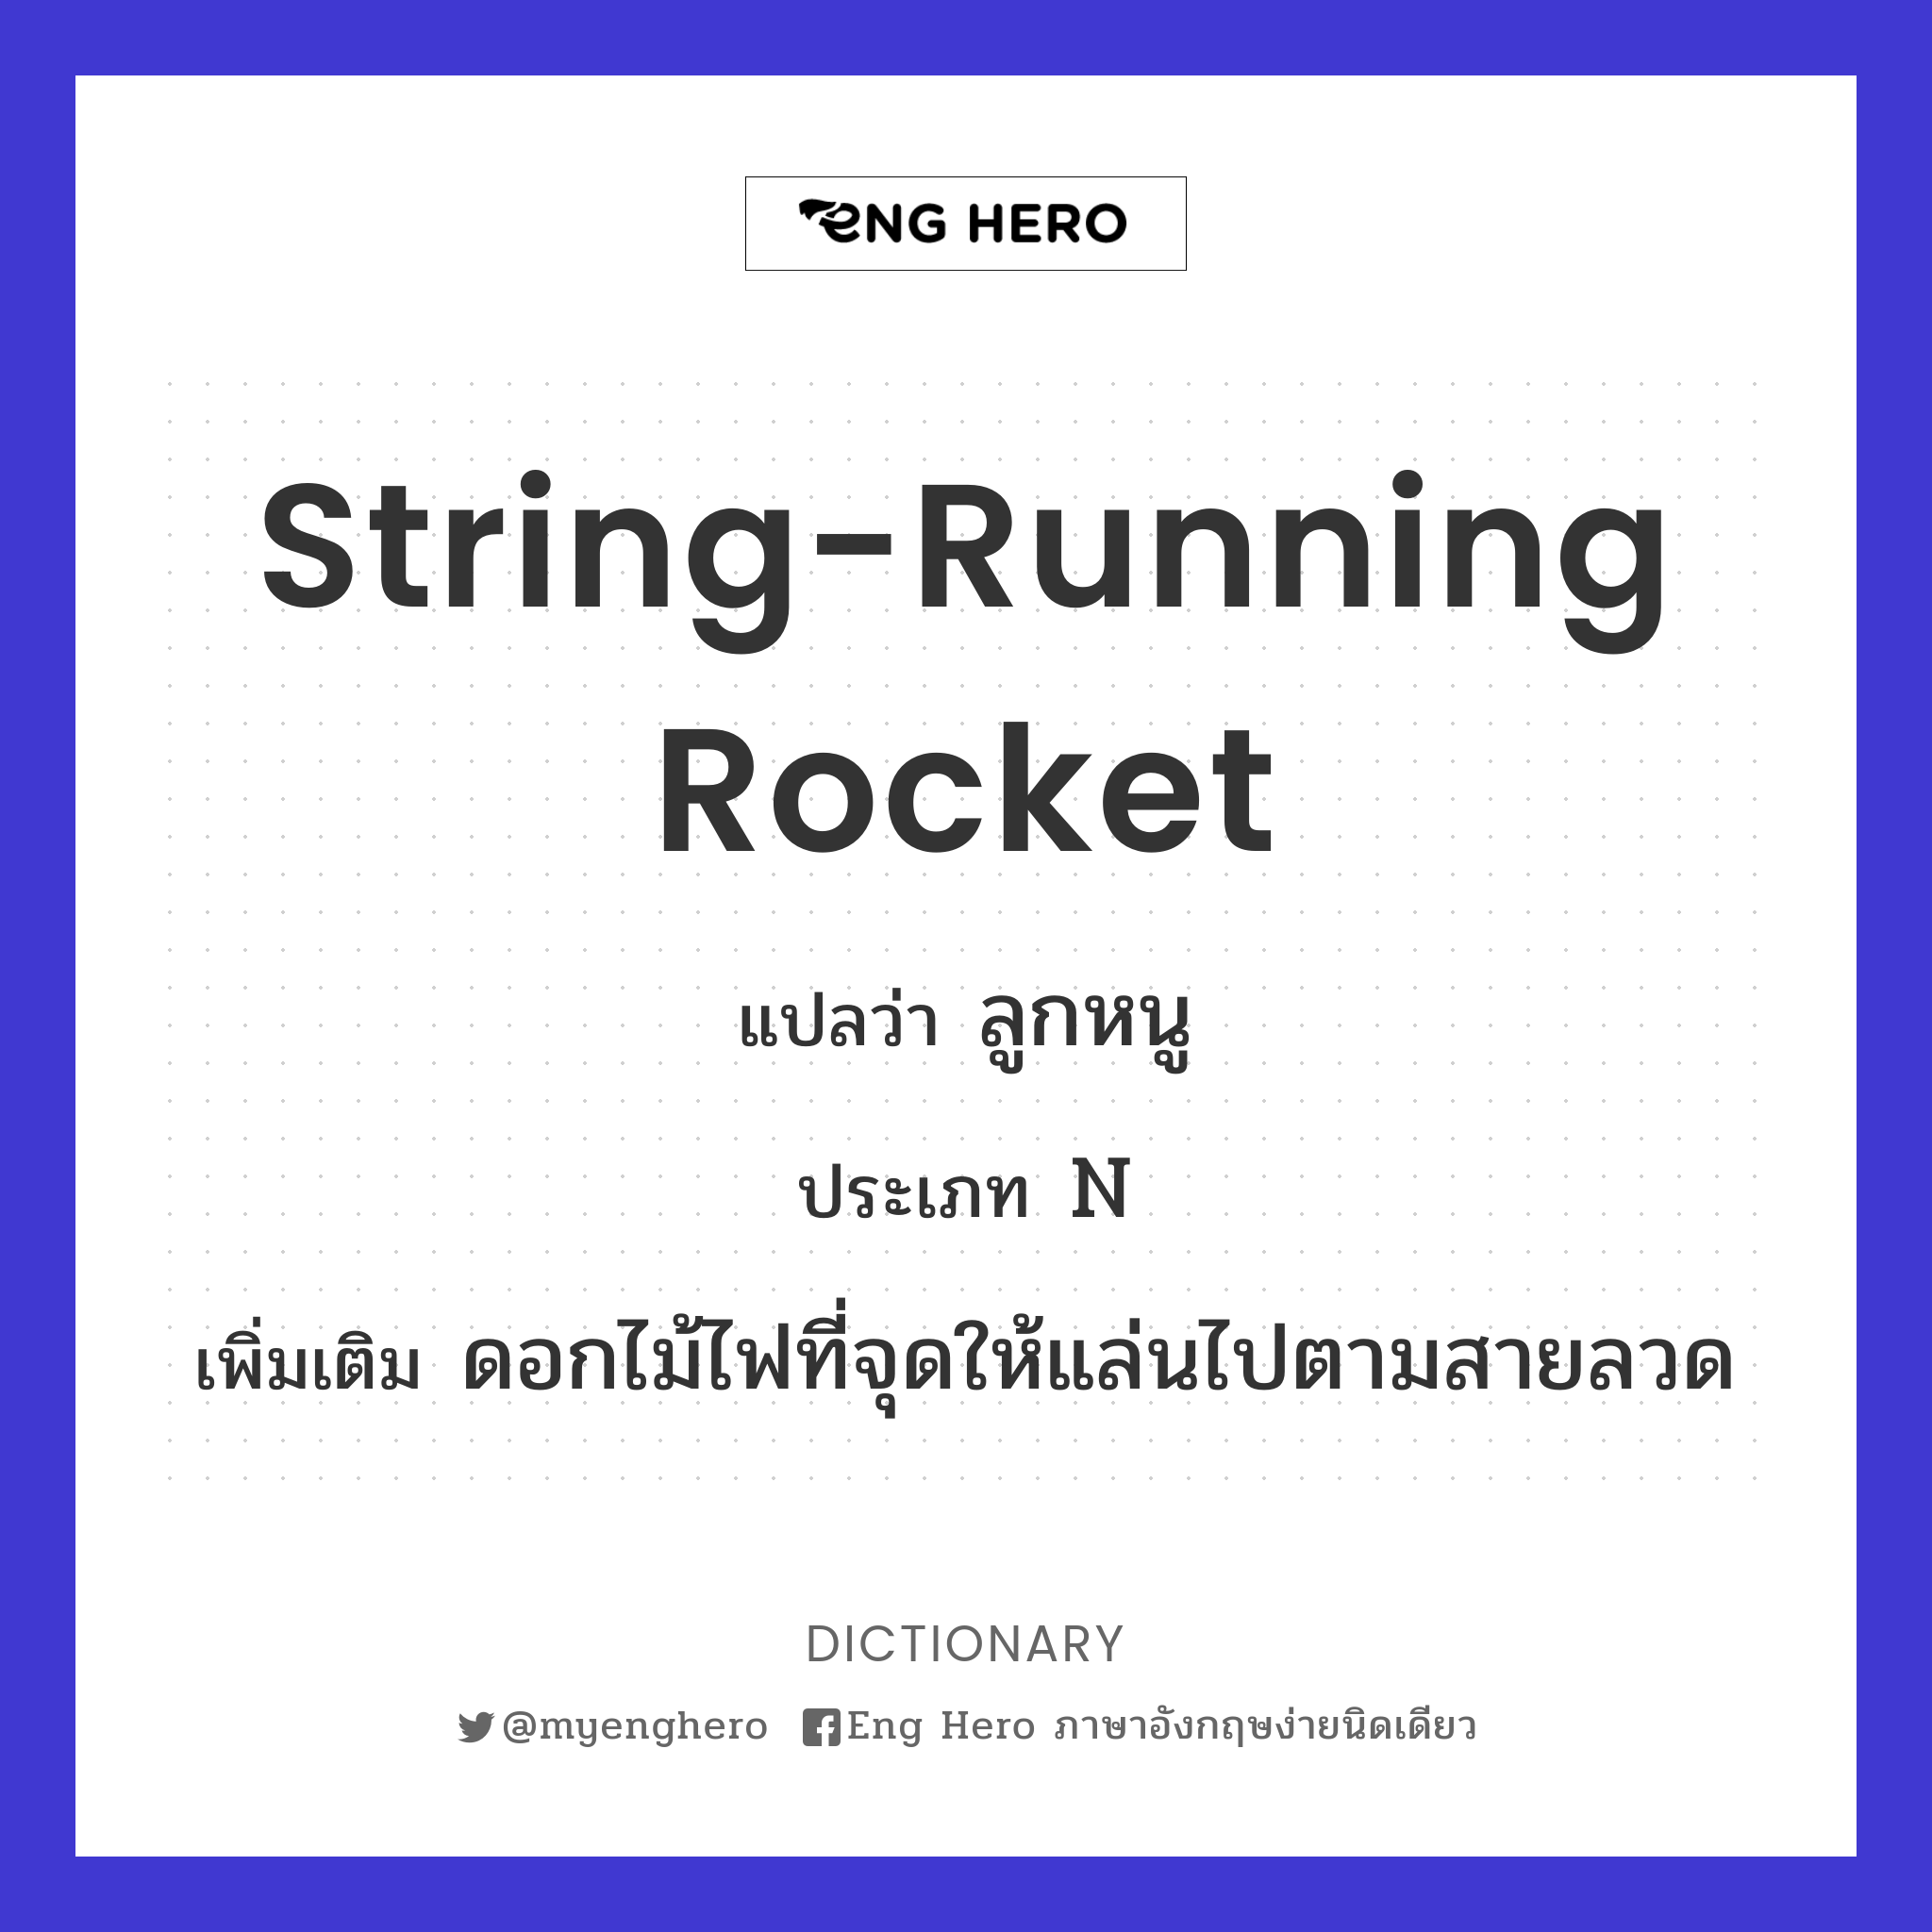 string-running rocket